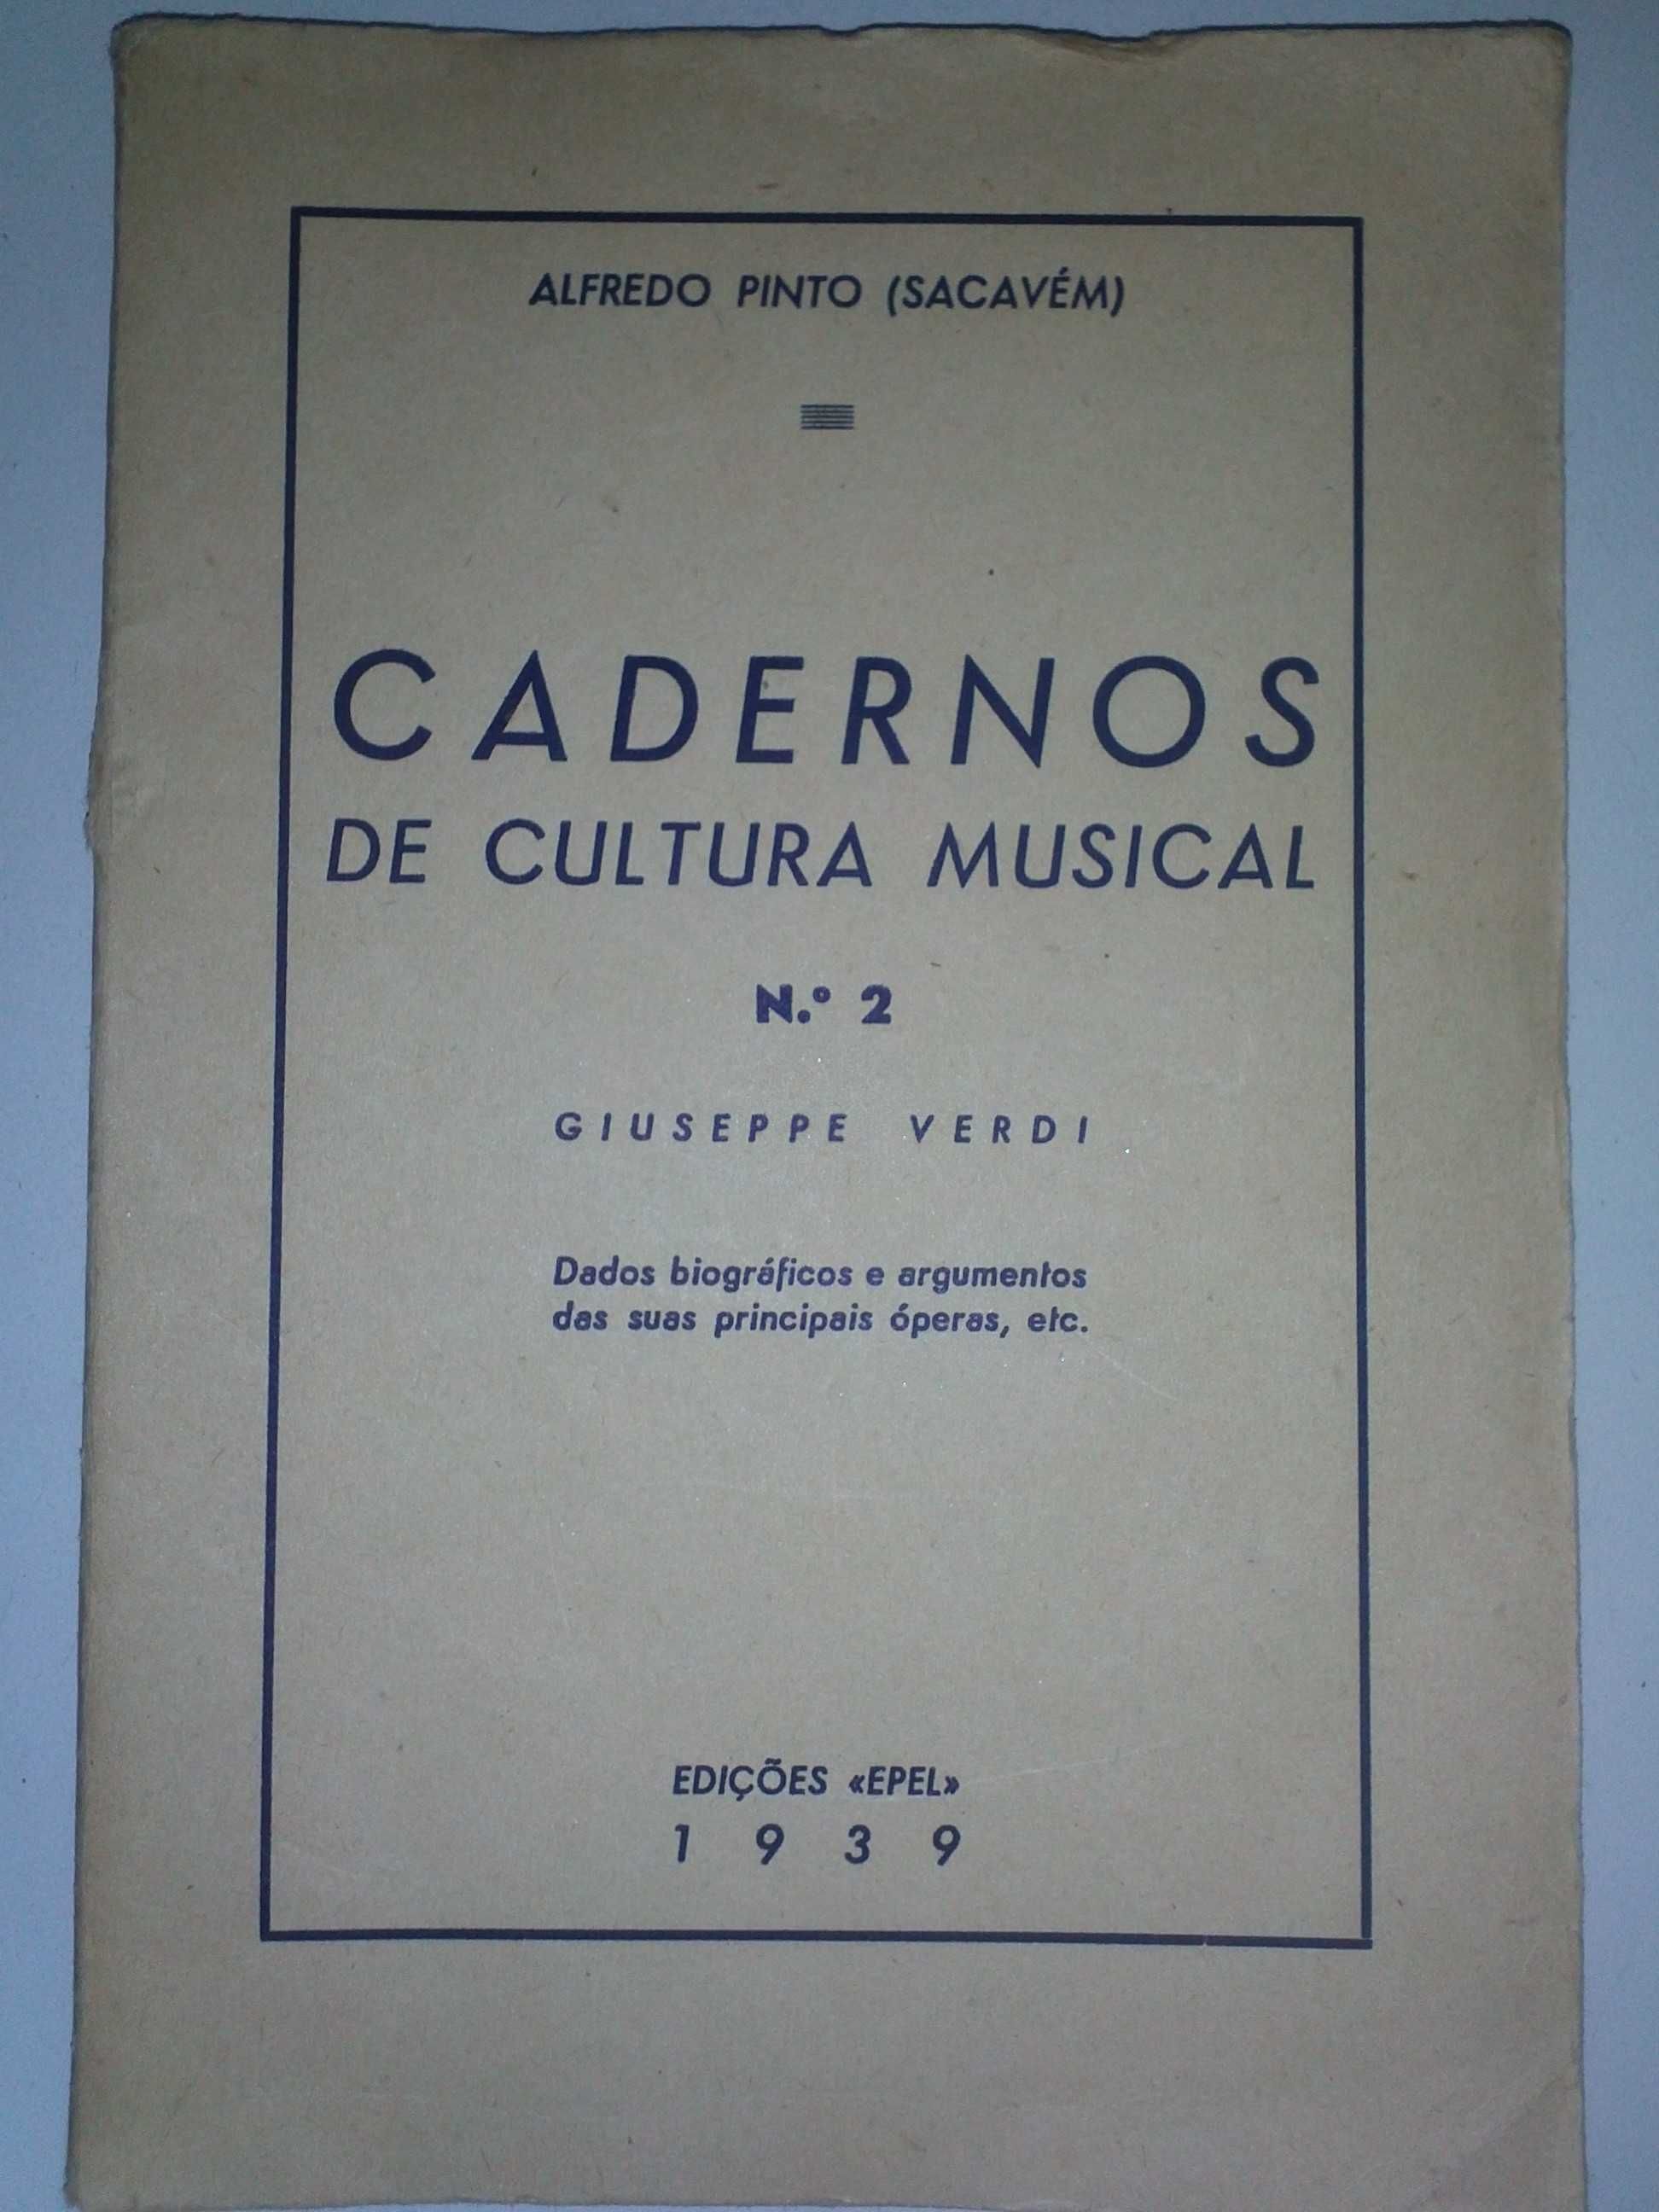 Livro "Cadernos de cultura musical n2 Giuseppe Verdi" 1939